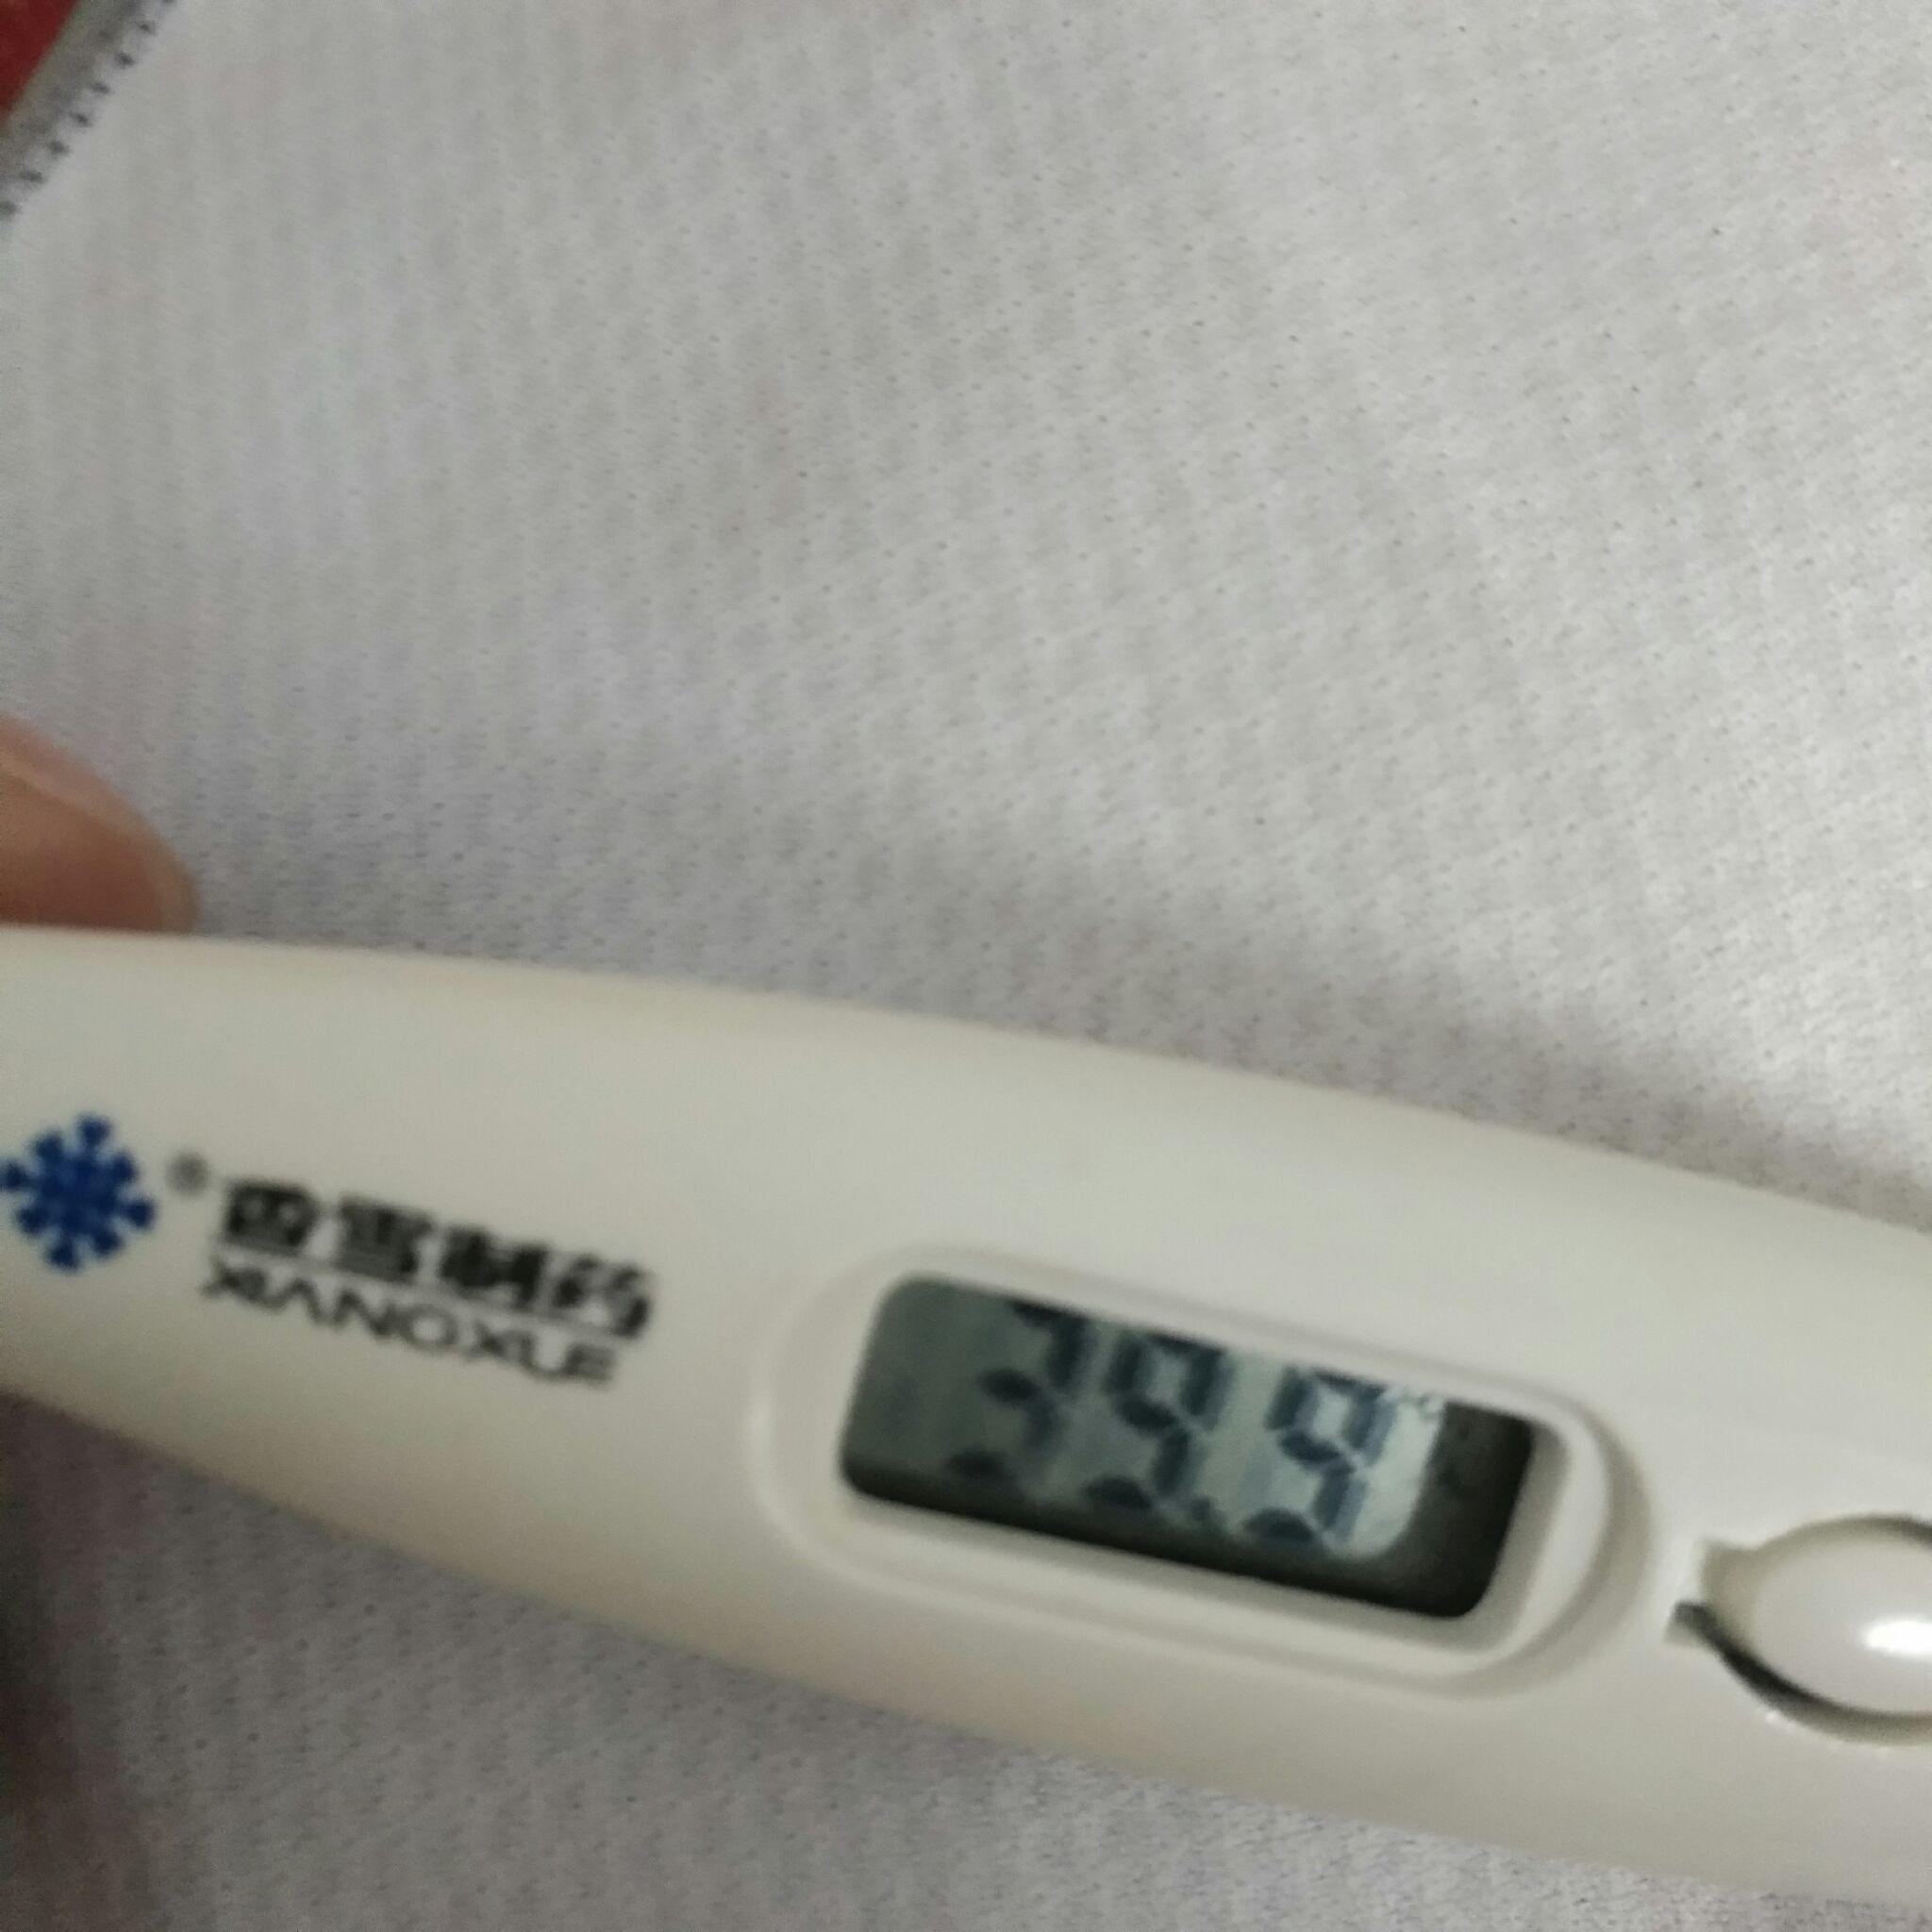 发烧超过40度是什么样的体验? 